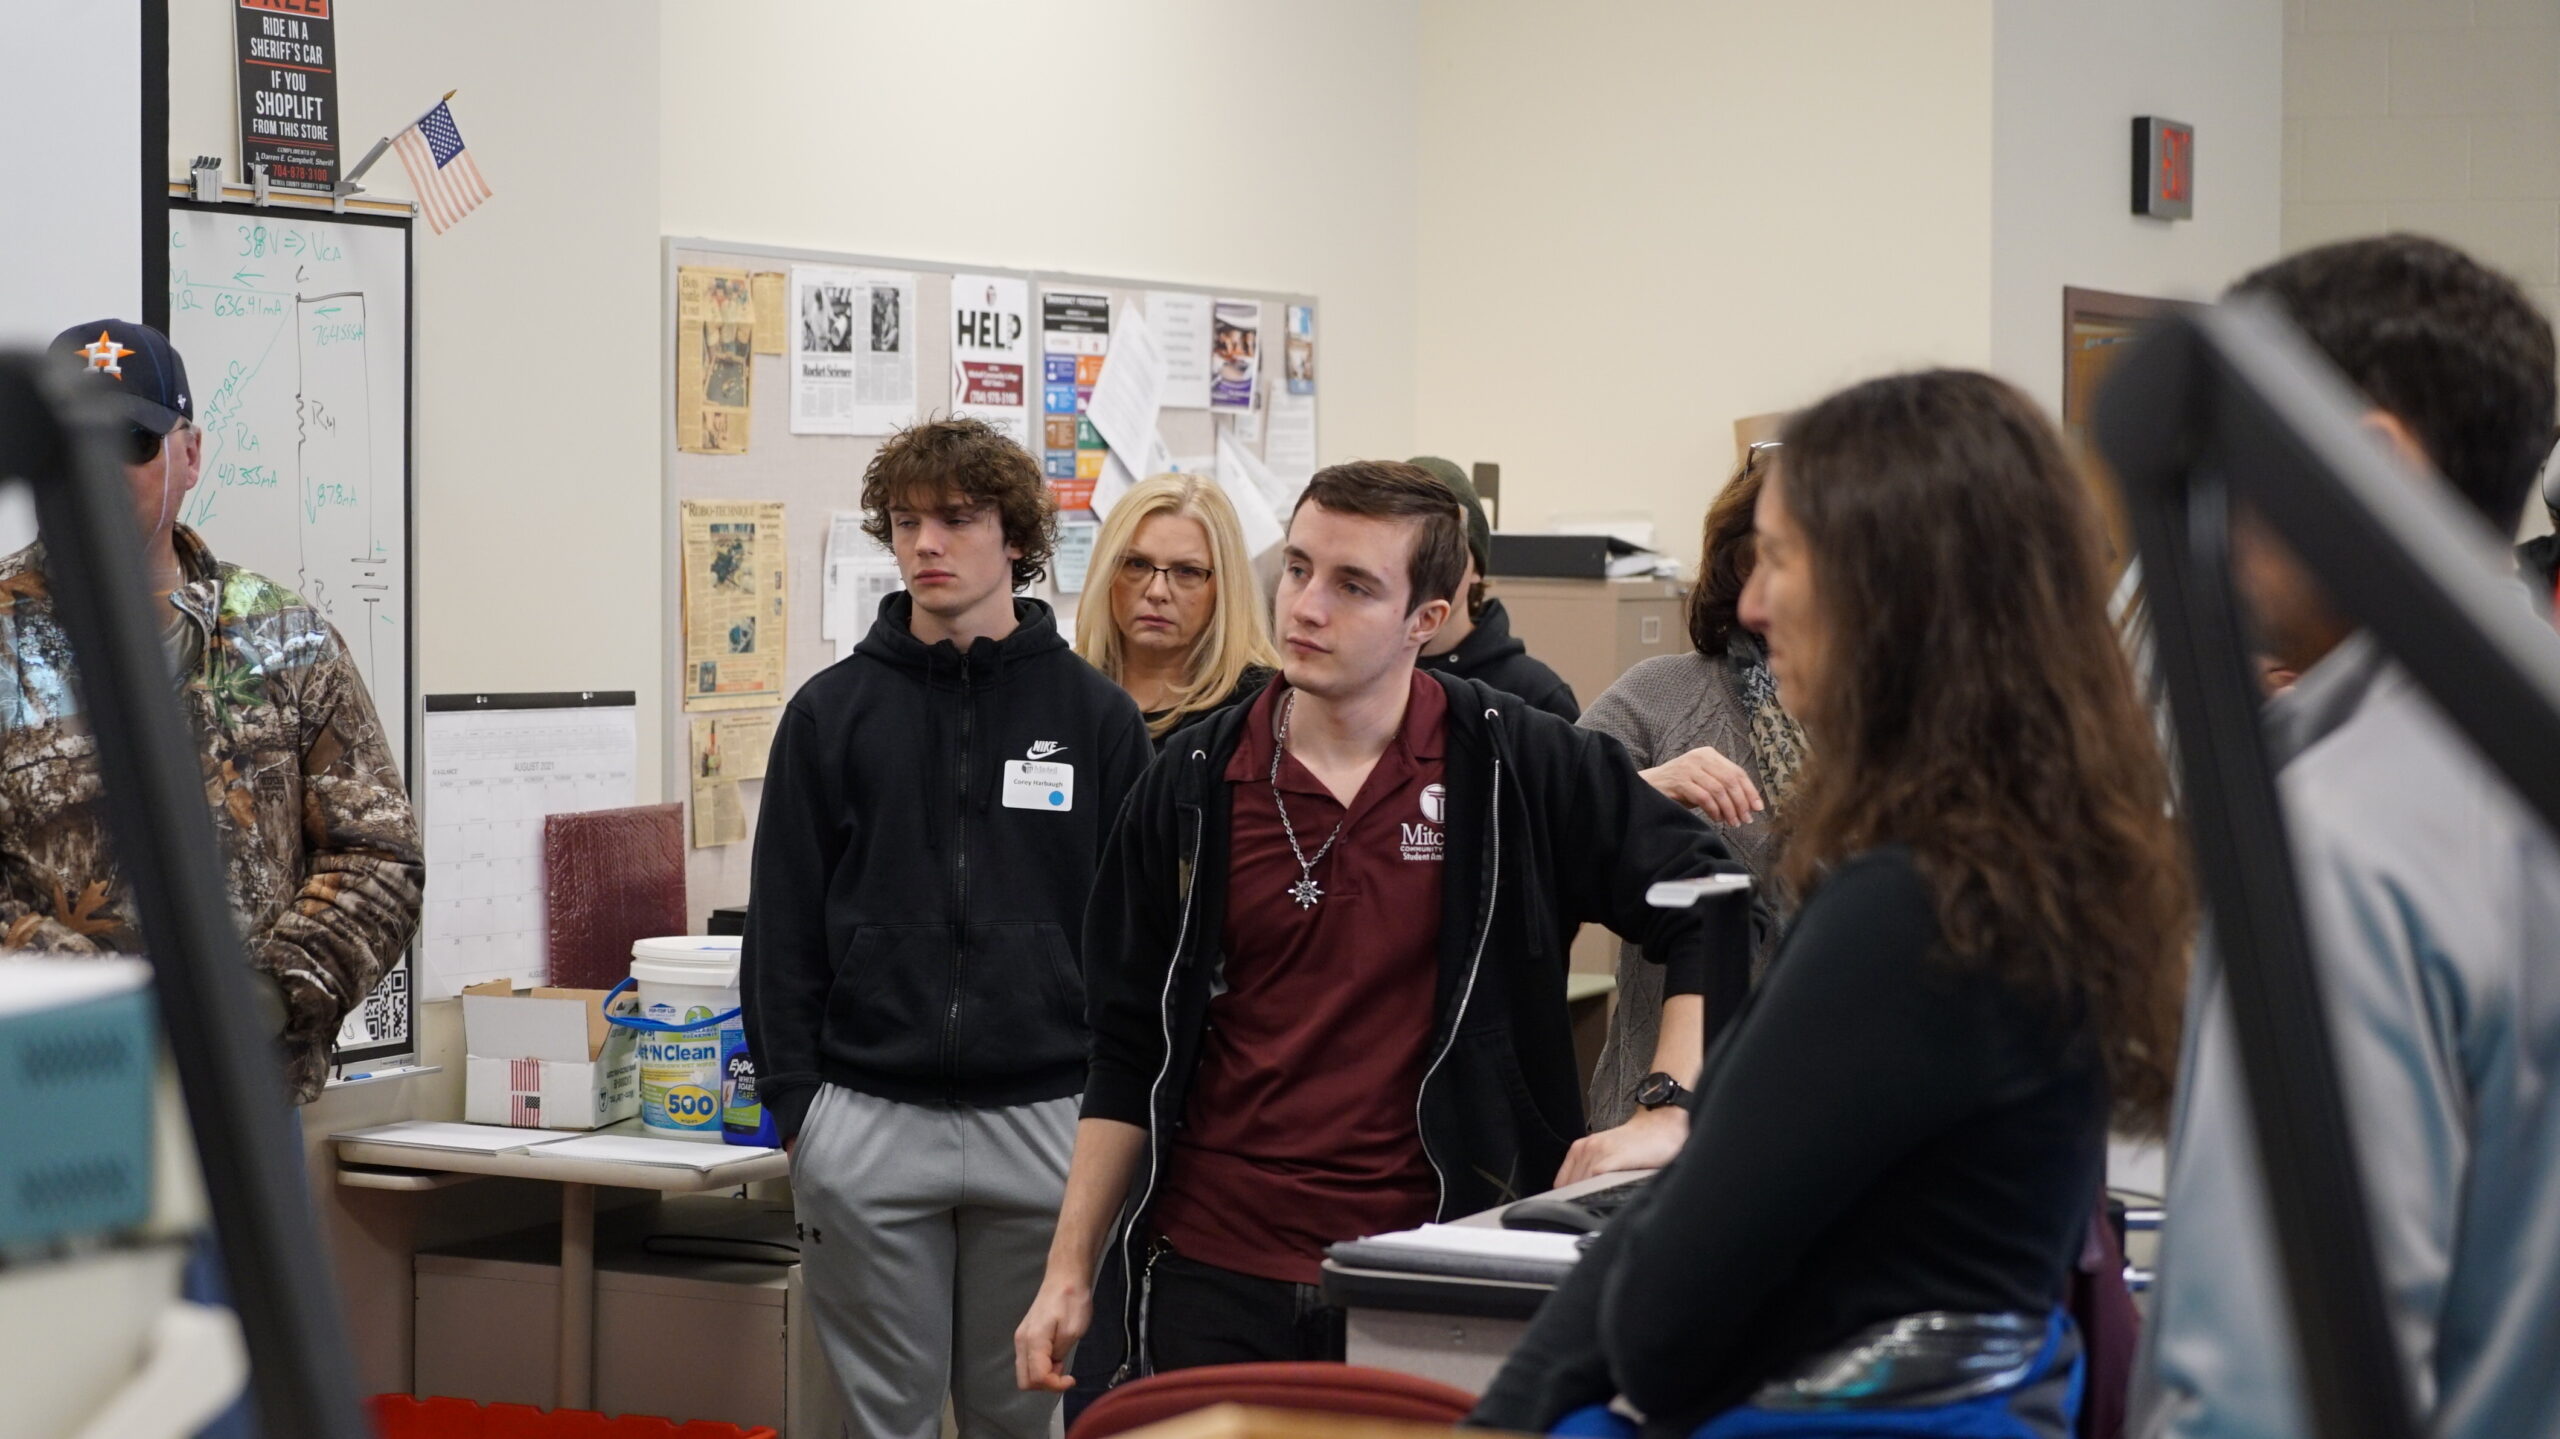 Les futurs étudiants de Mitchell écoutent une présentation lors d'une visite du campus.